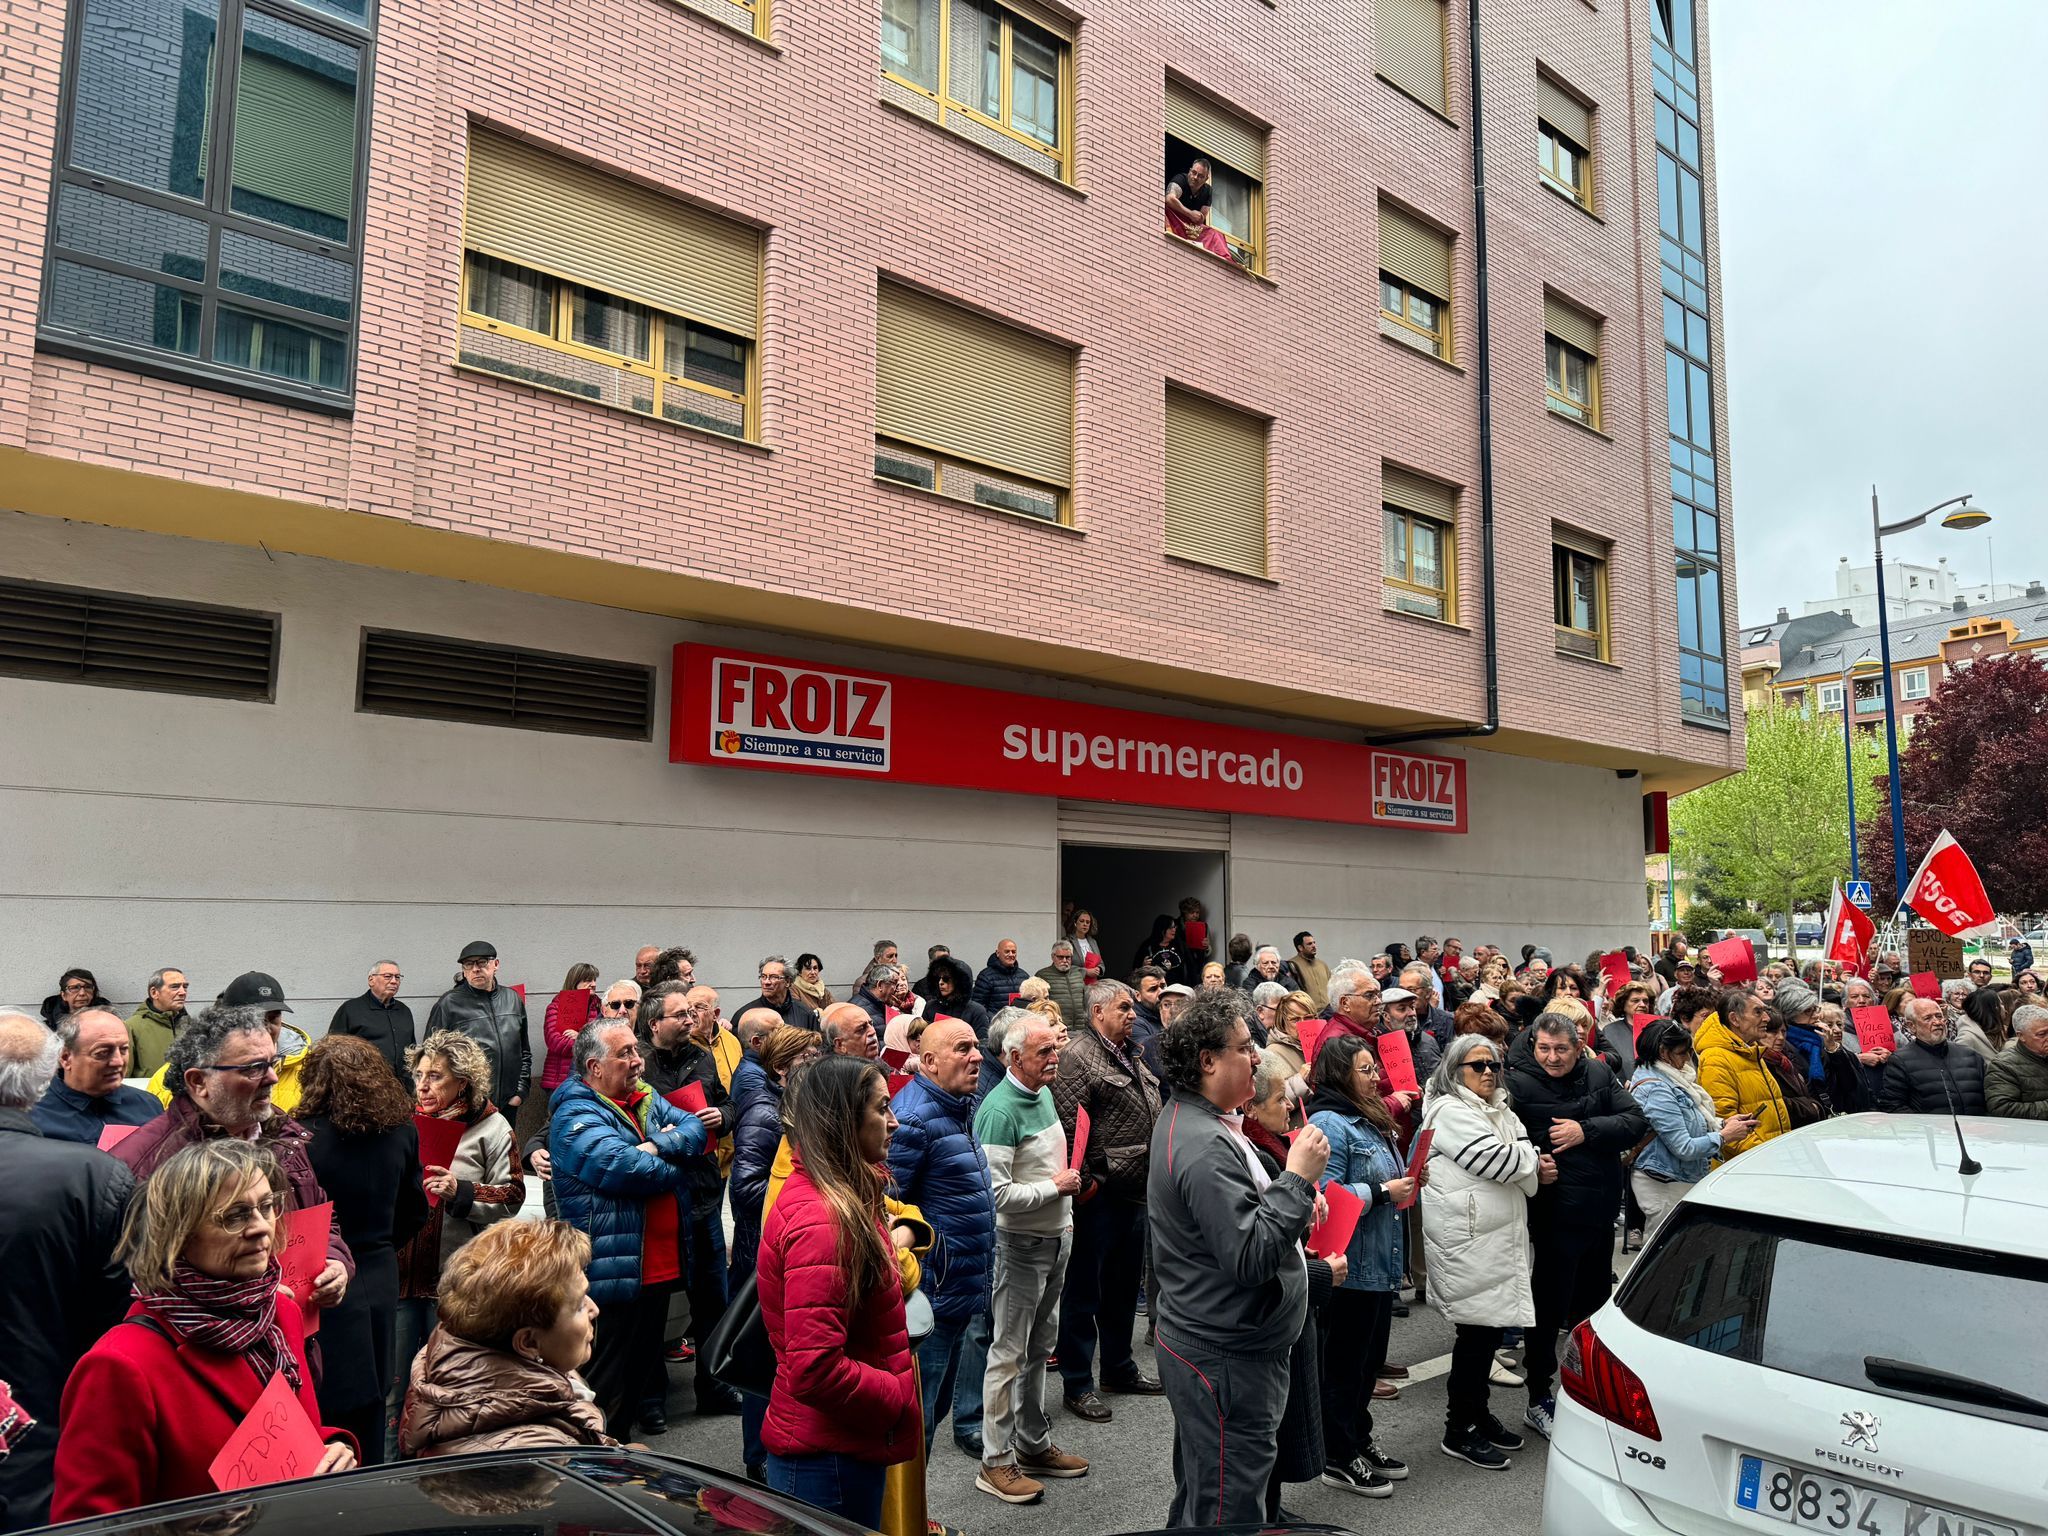 Rodean la sede del PSOE de León al grito de "Pedro, sí vale la pena". | L.N.C.